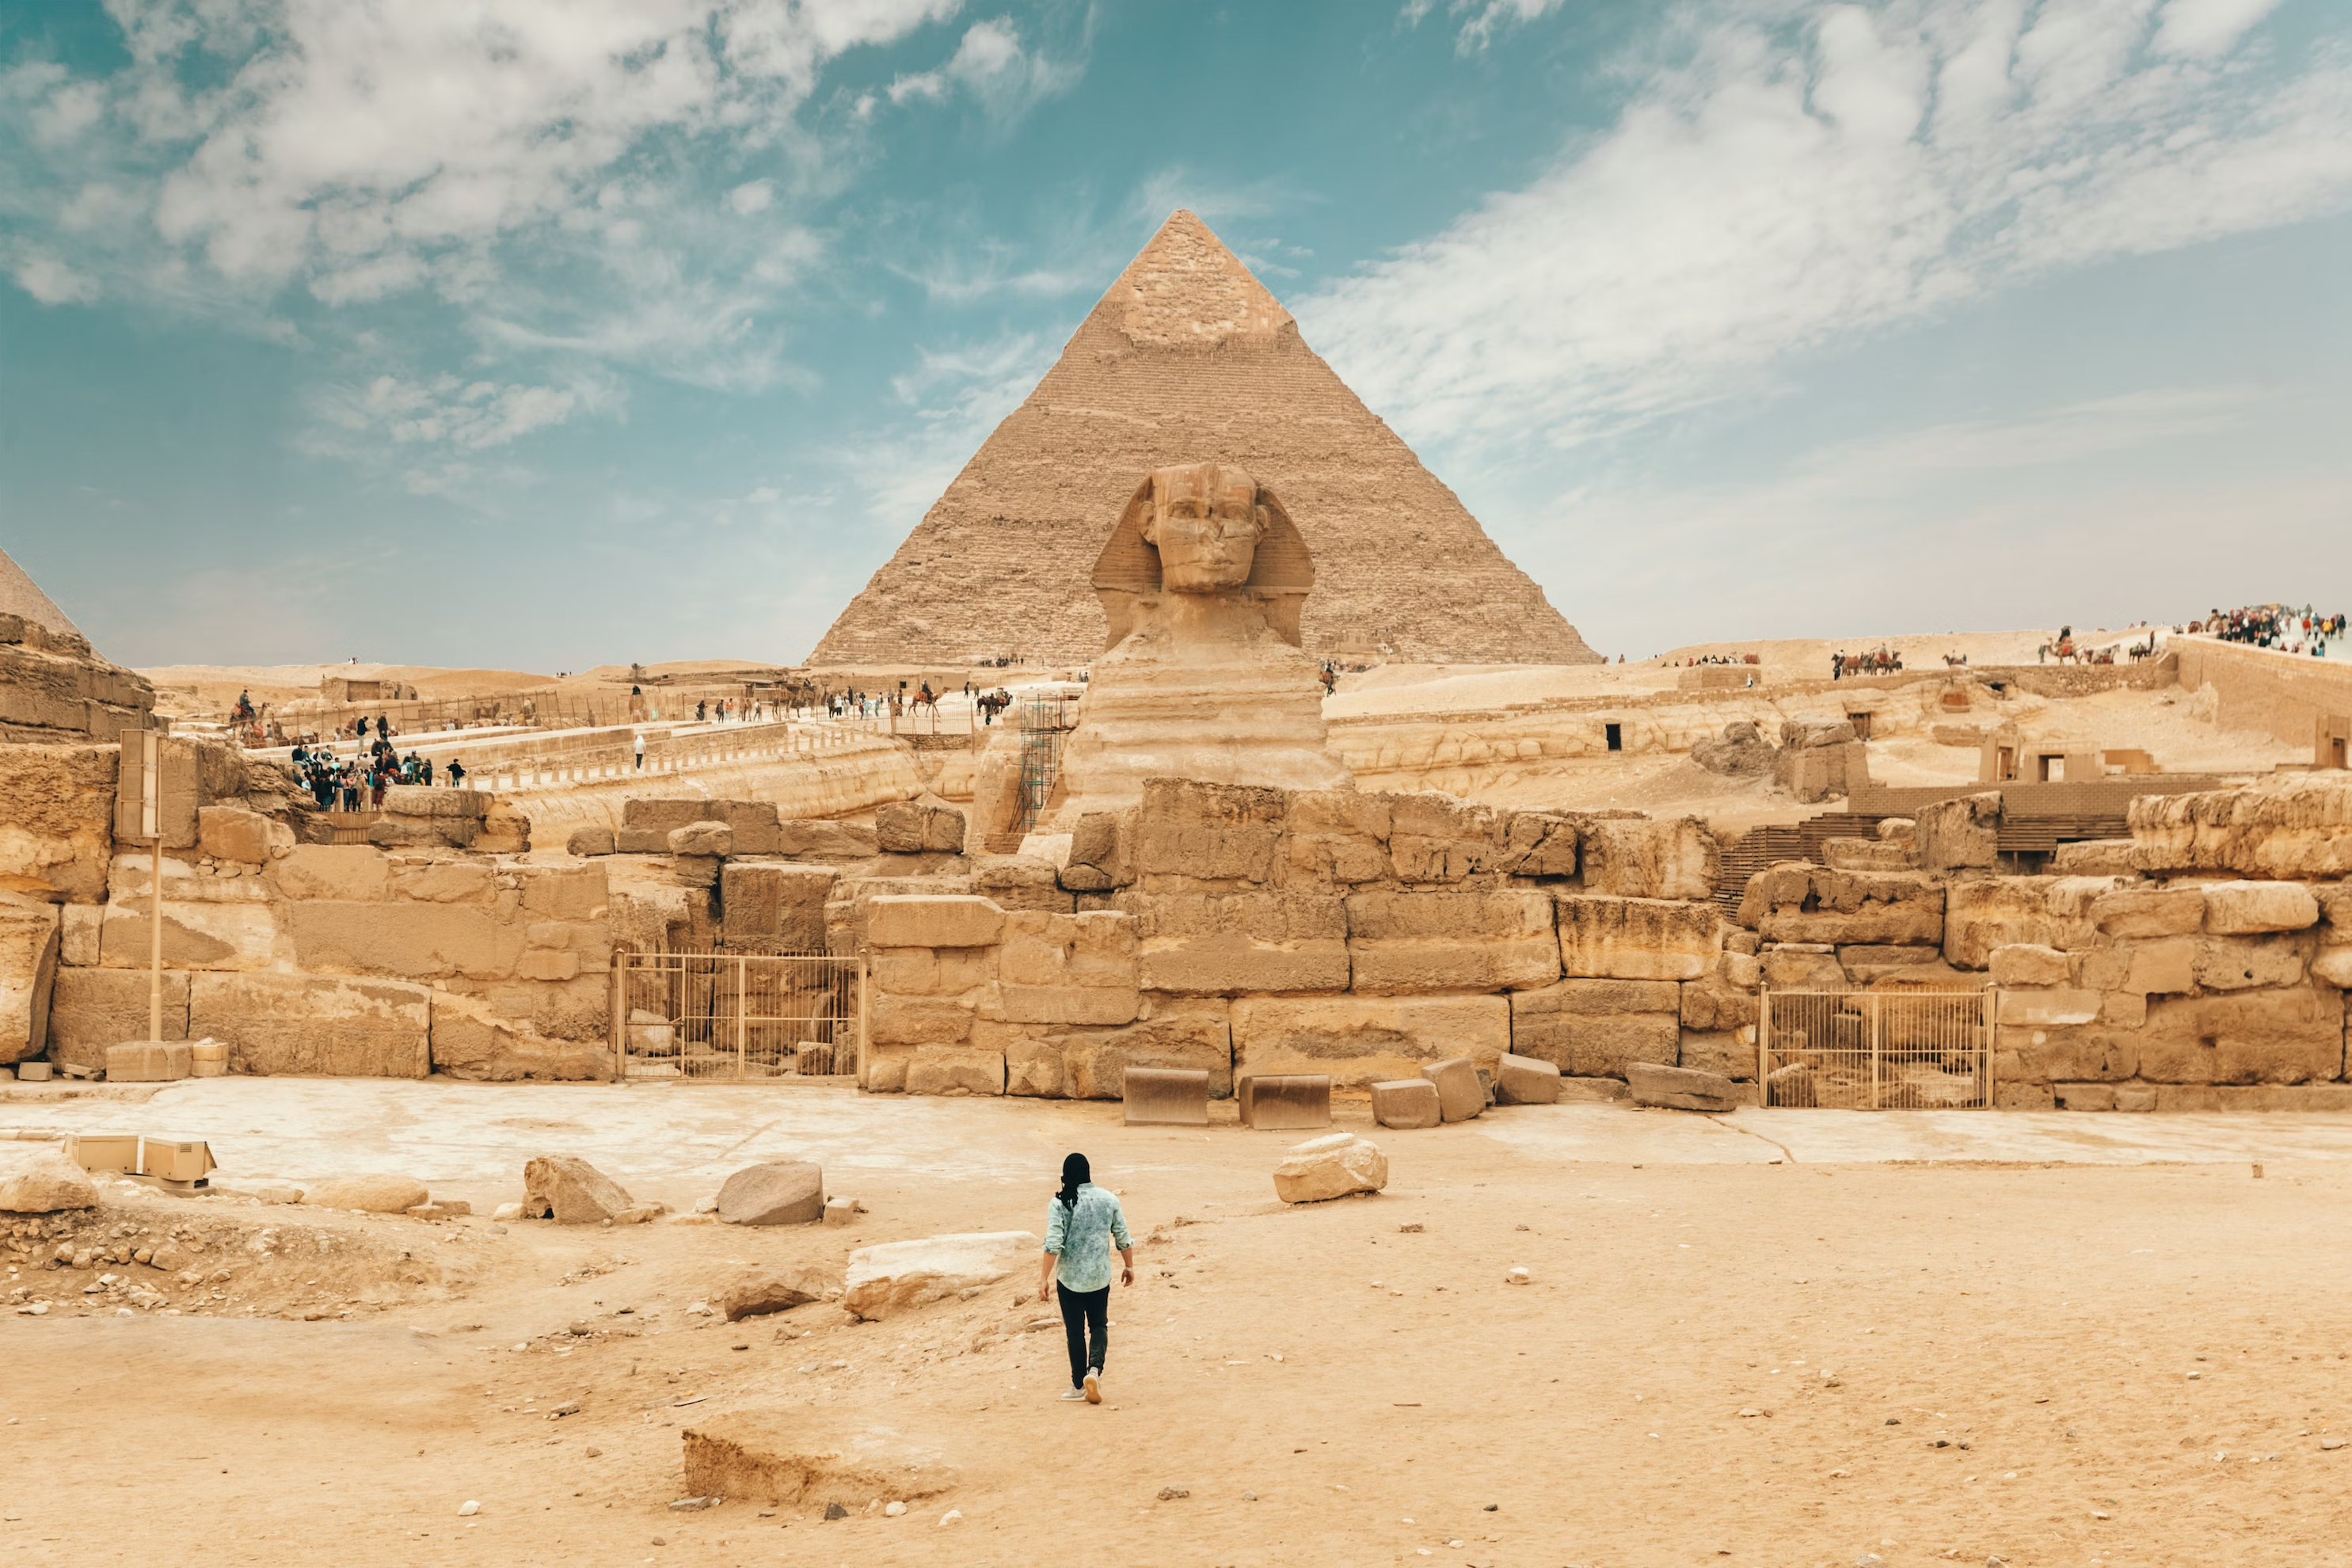 pyramids of giza egypt cemetery tours